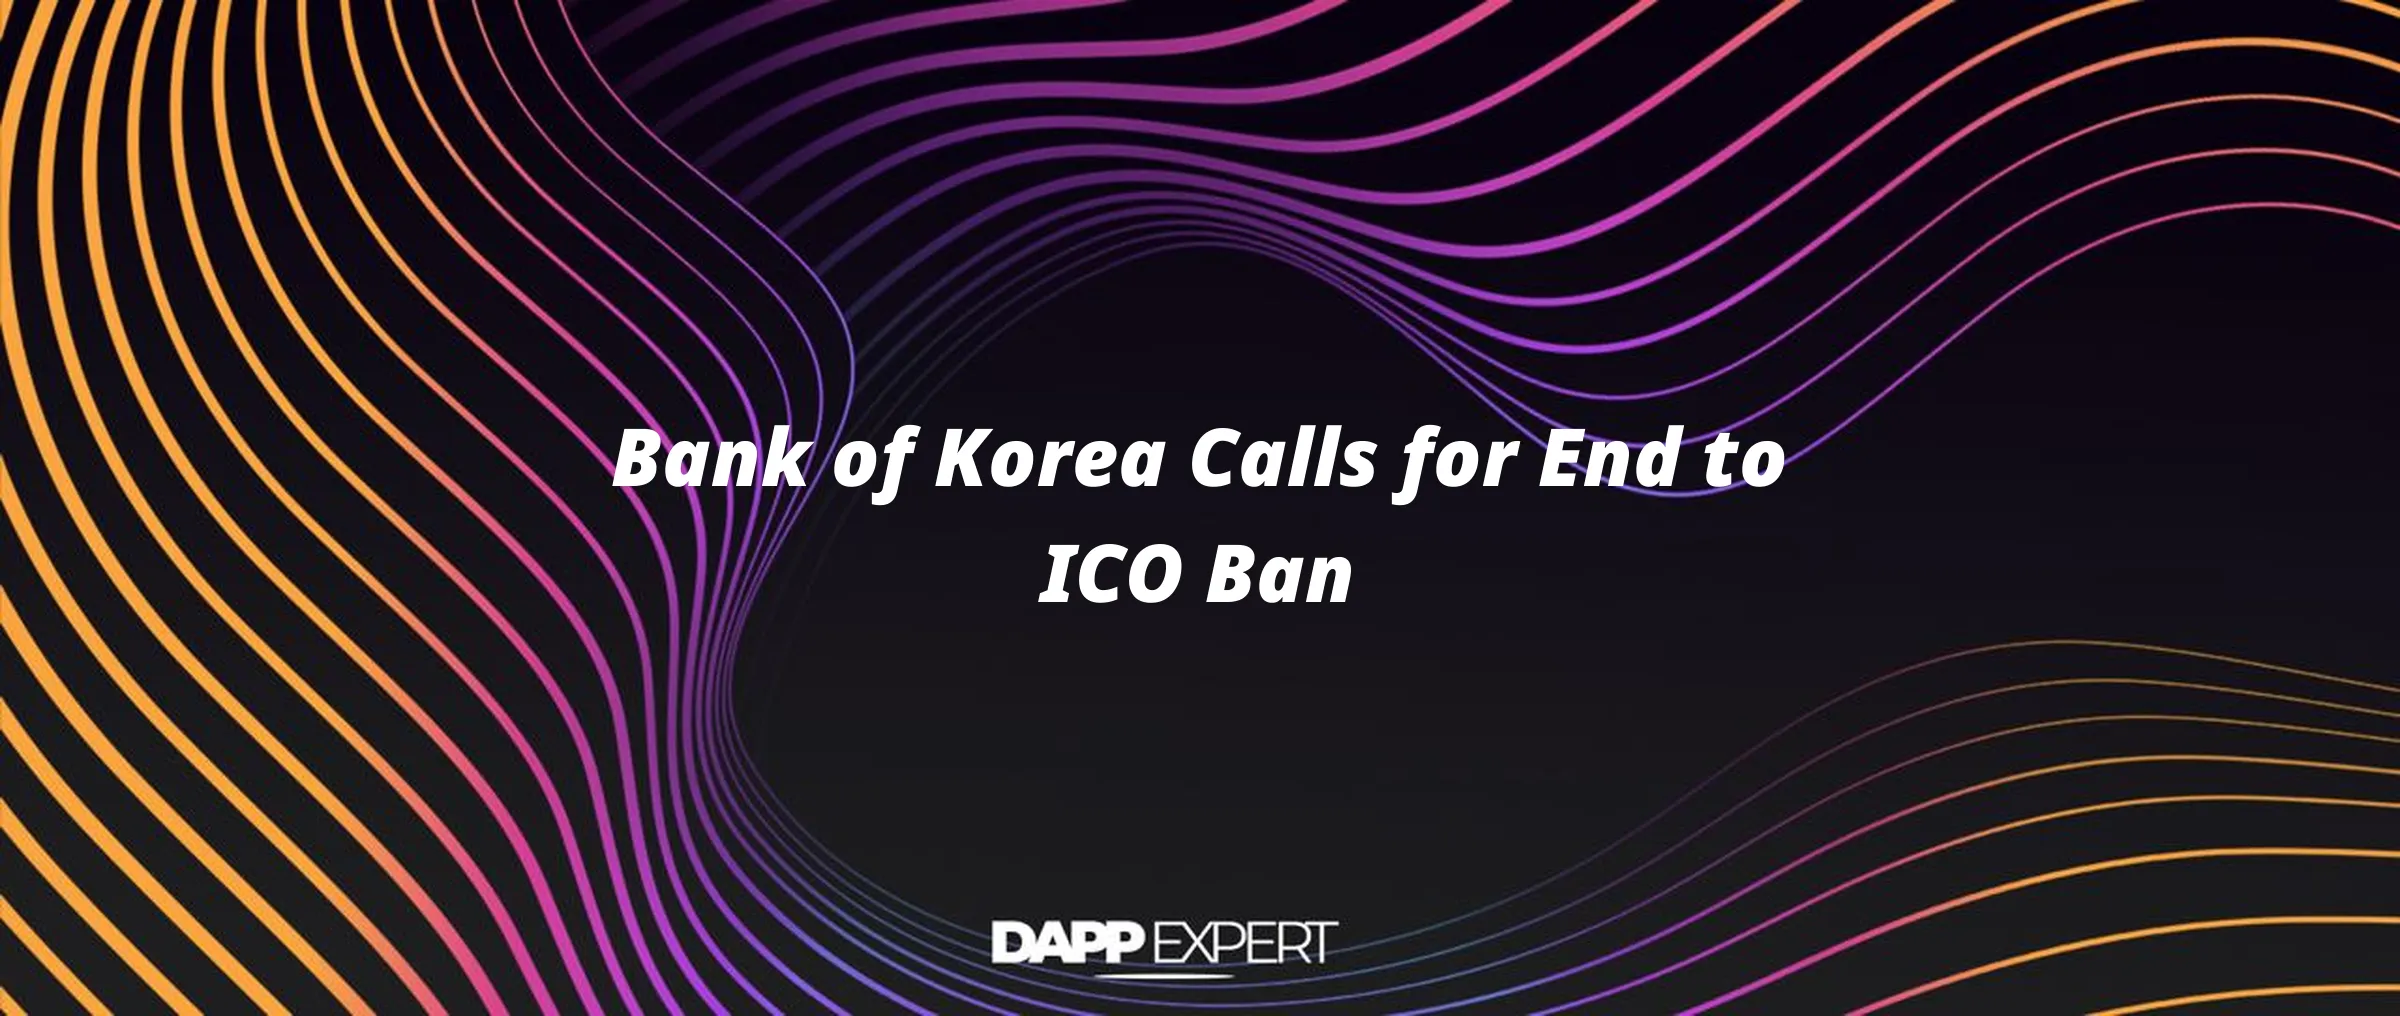 Bank of Korea Calls for End to ICO Ban